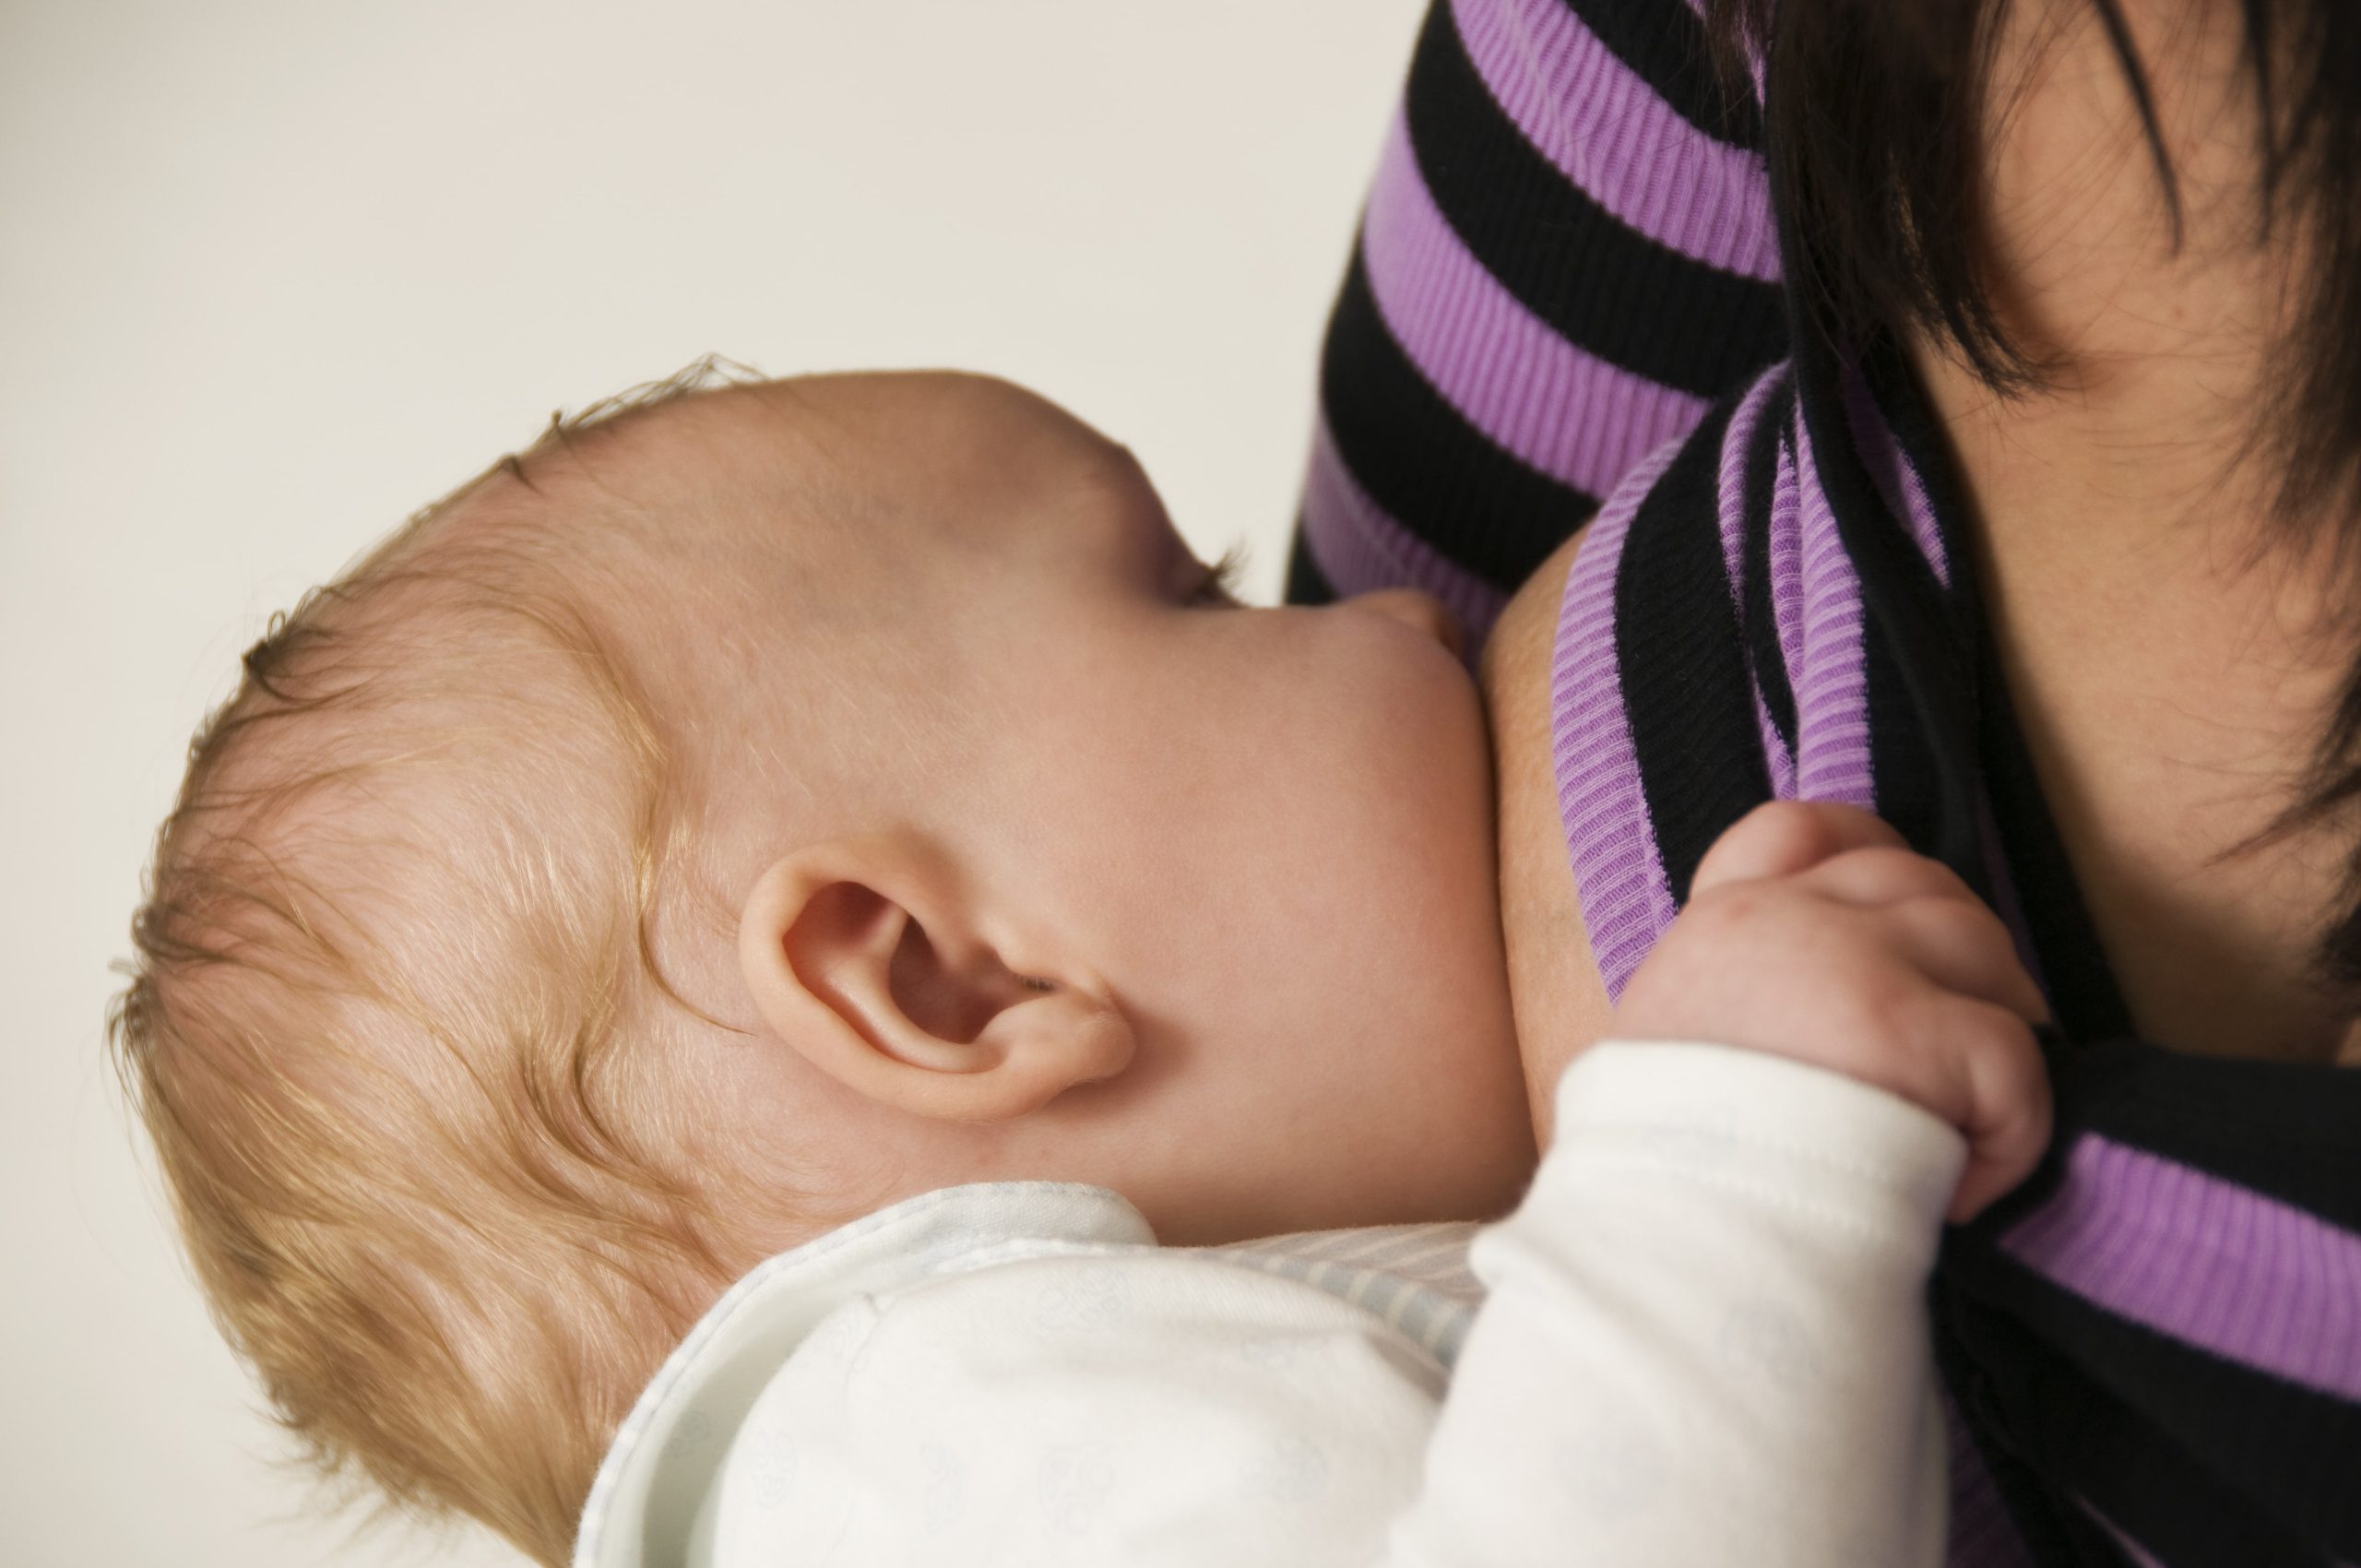 A breastfeeding baby